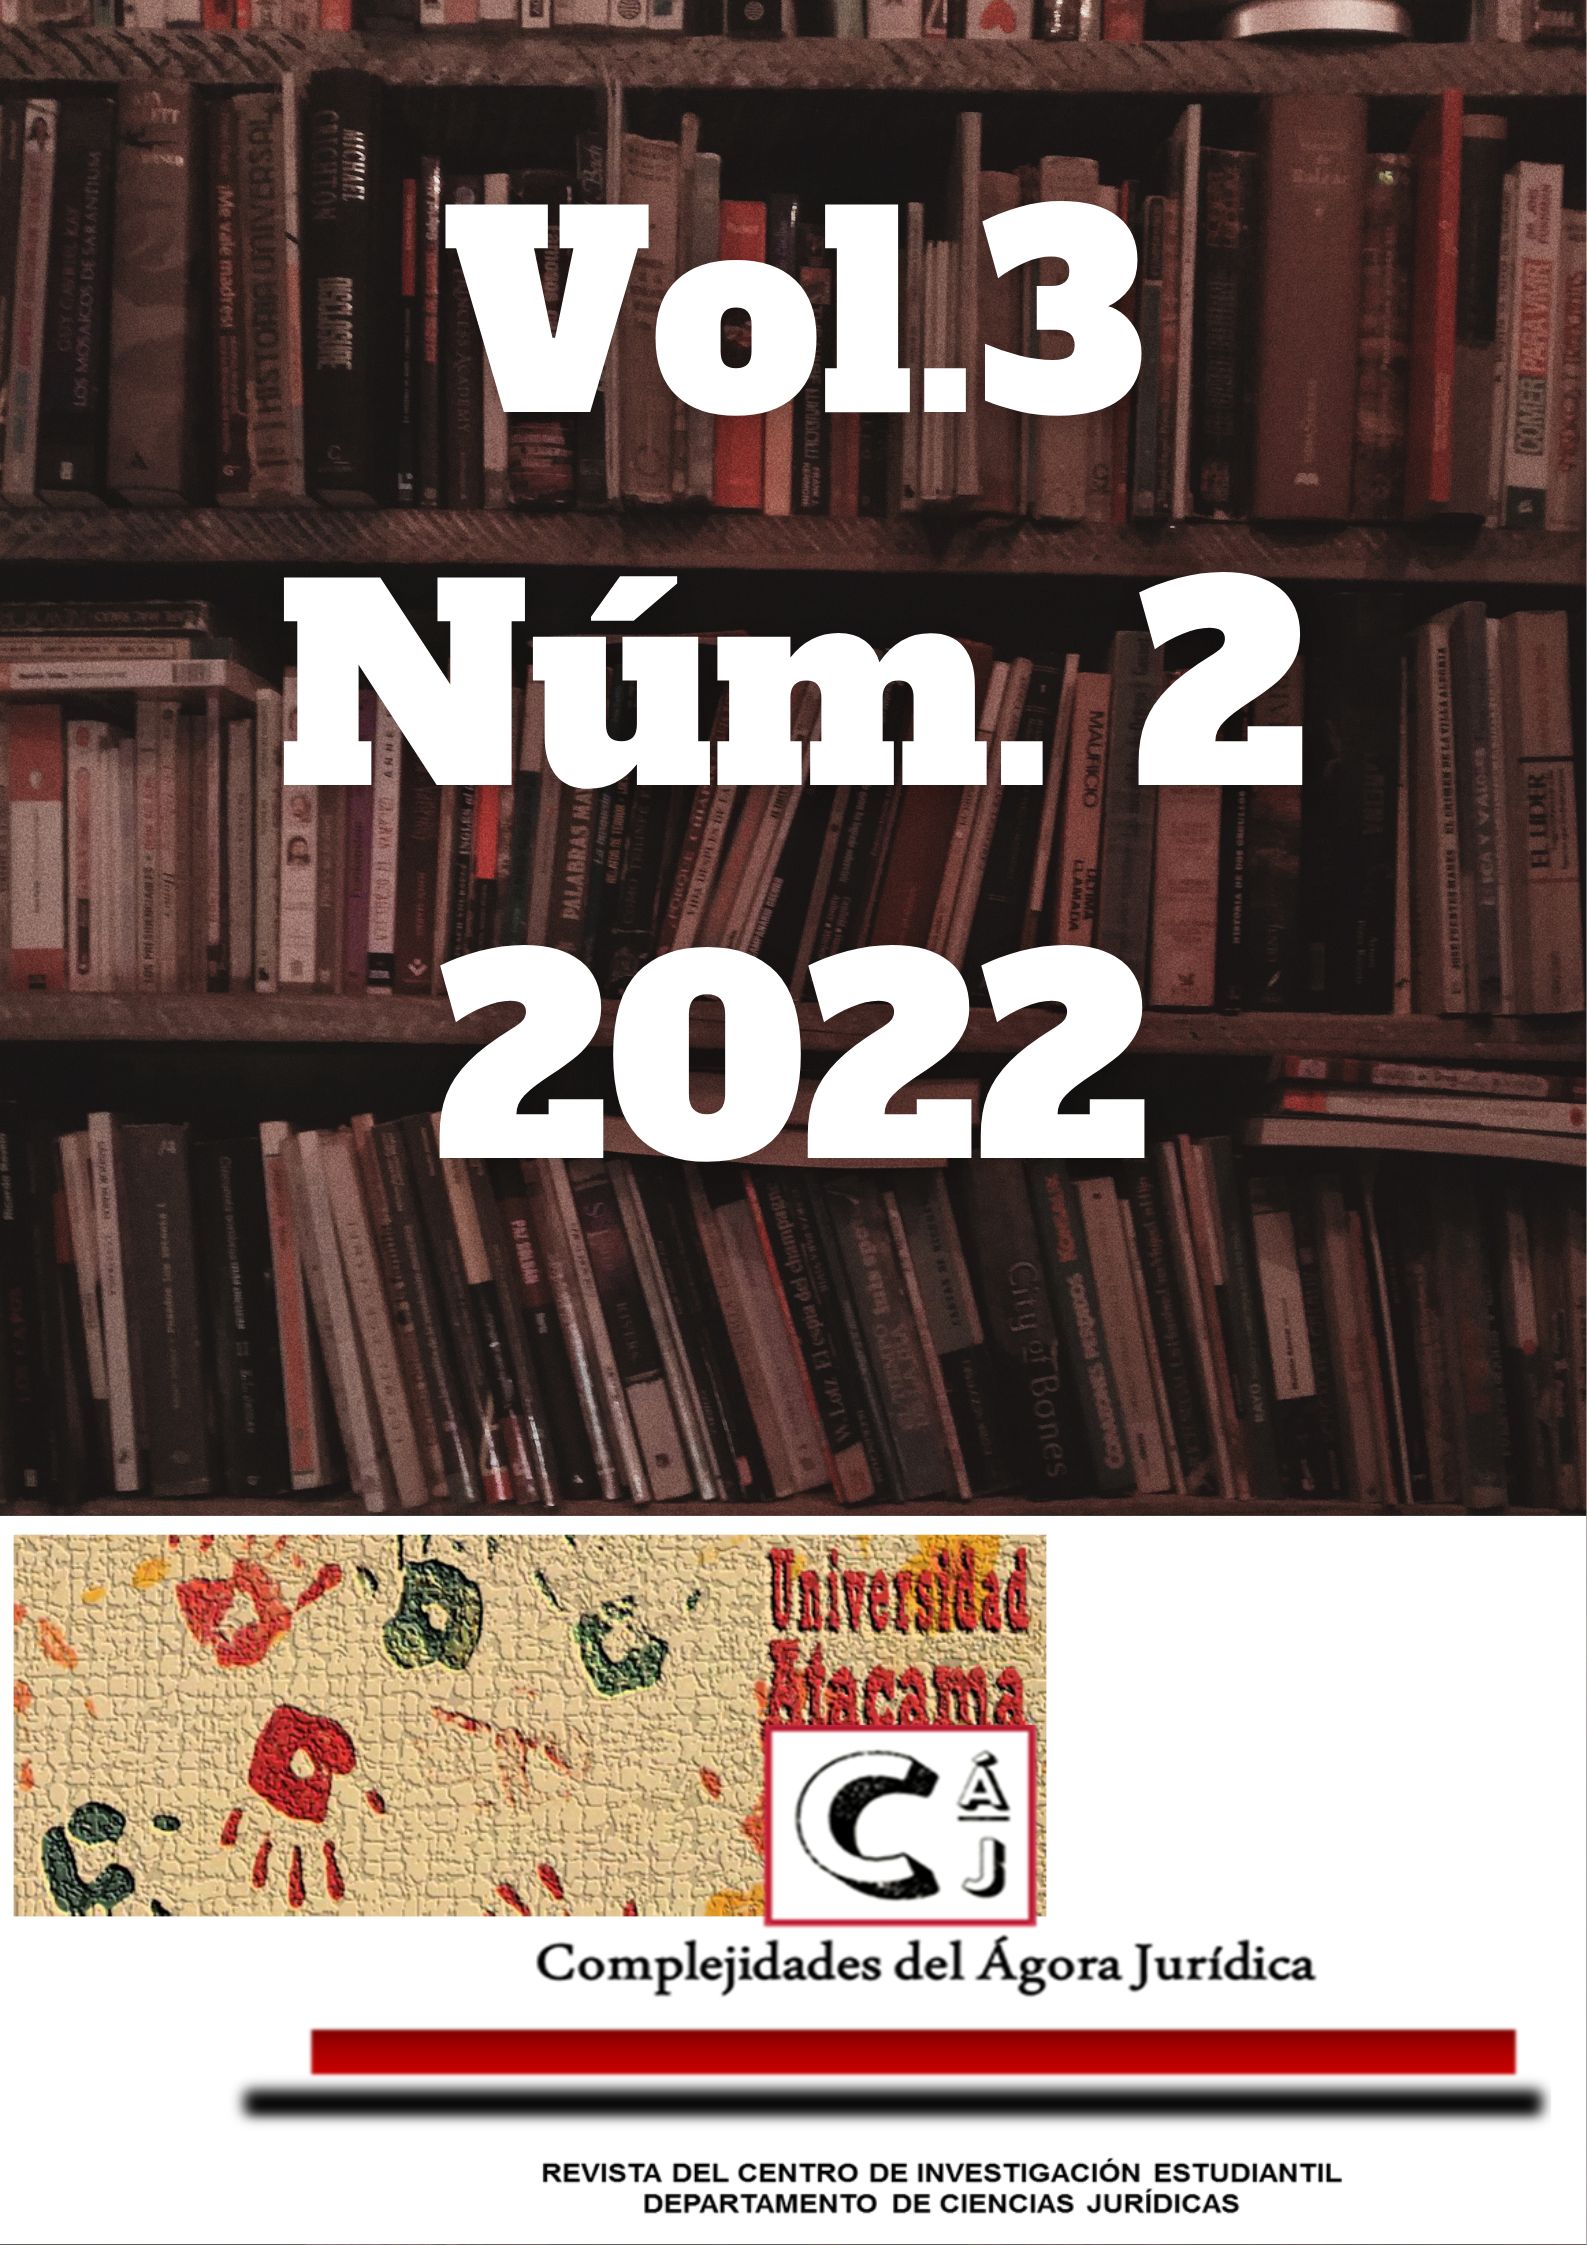 					Ver Vol. 3 Núm. 2 (2022)
				